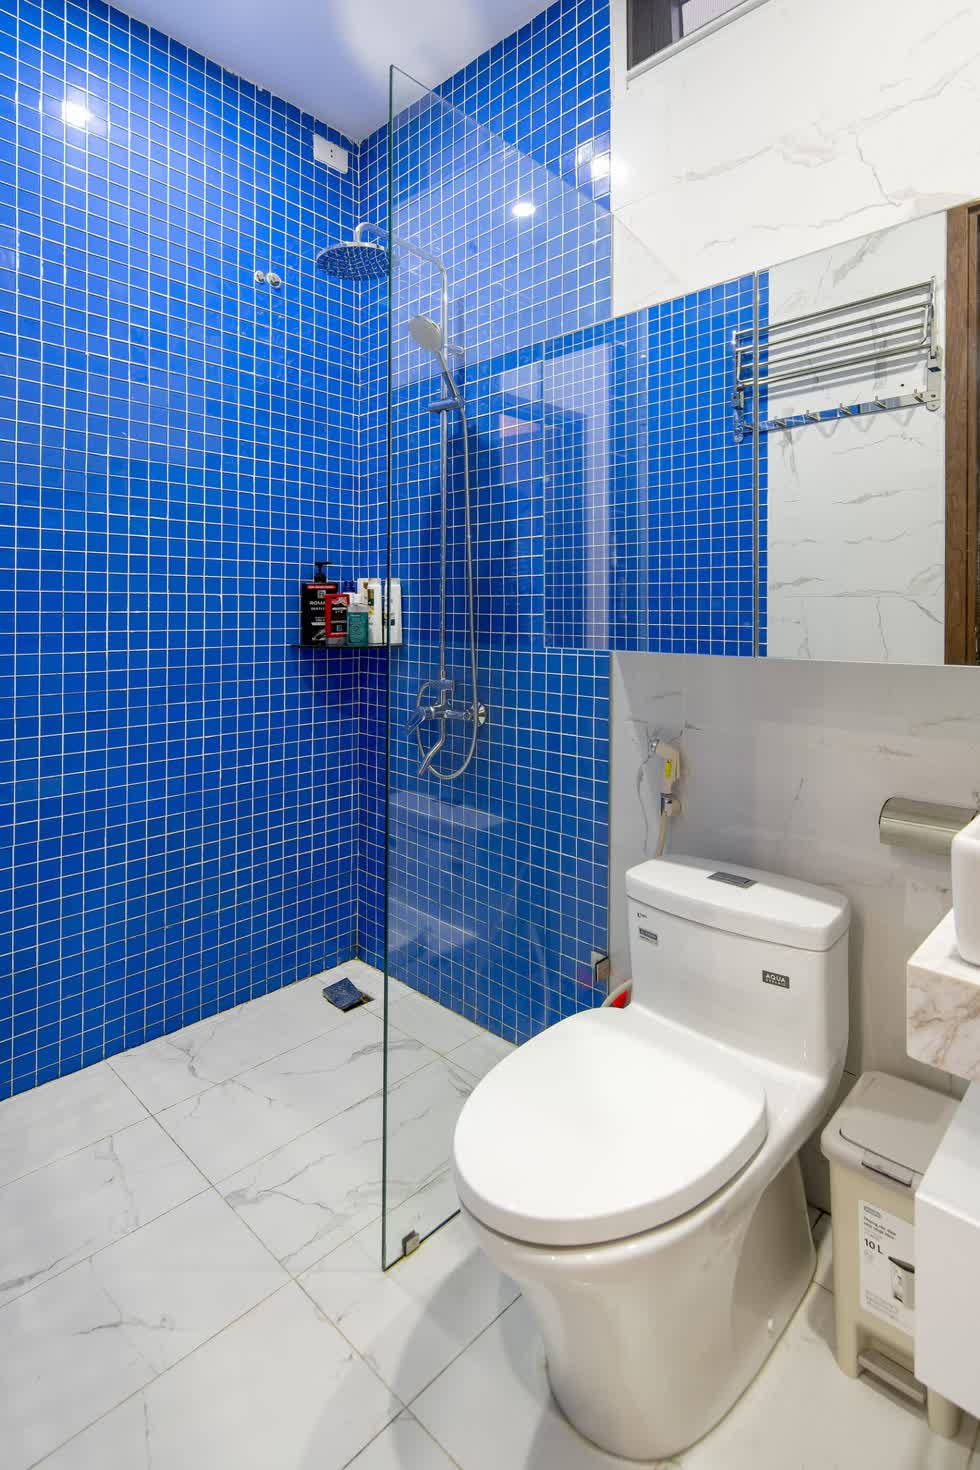 Phòng vệ sinh ở tầng 2 được tạo điểm nhấn bằng gạch thẻ xanh đi ron trắng .